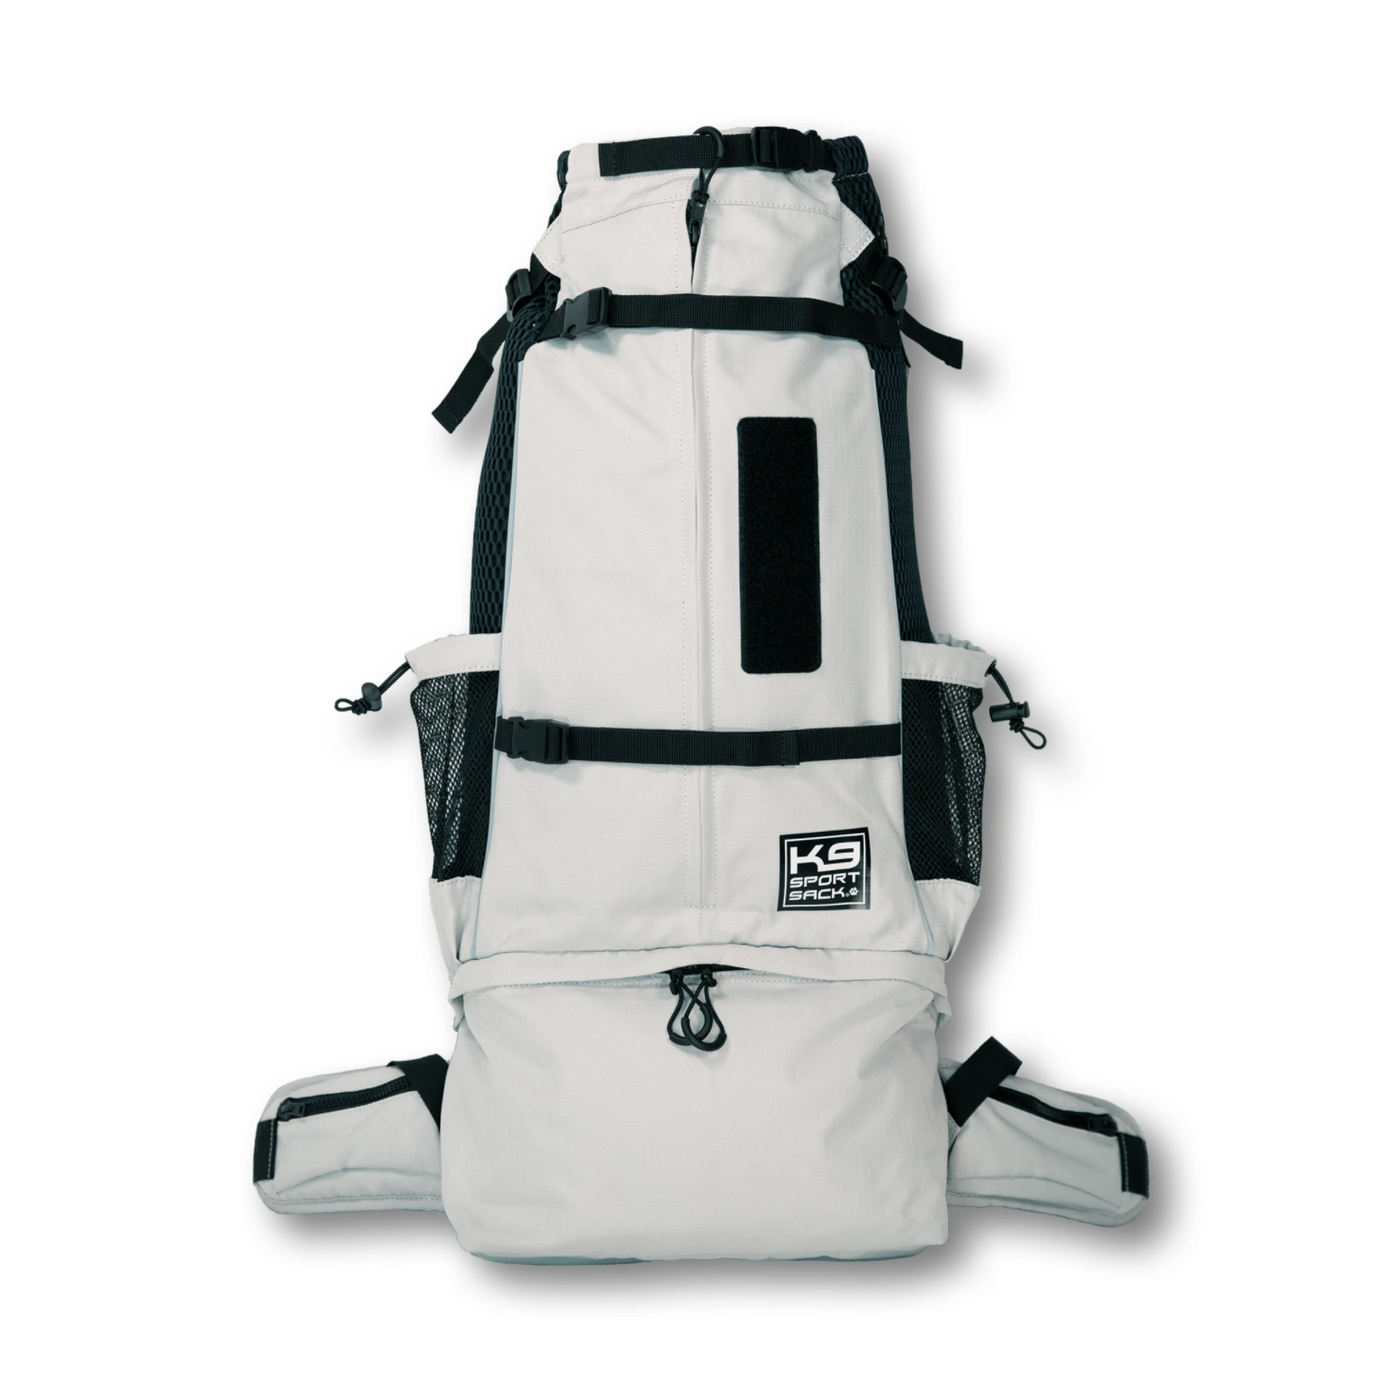 K9 SPORT SACK KNAVIGATE - The Best Dog carrier backpack in lunar grey